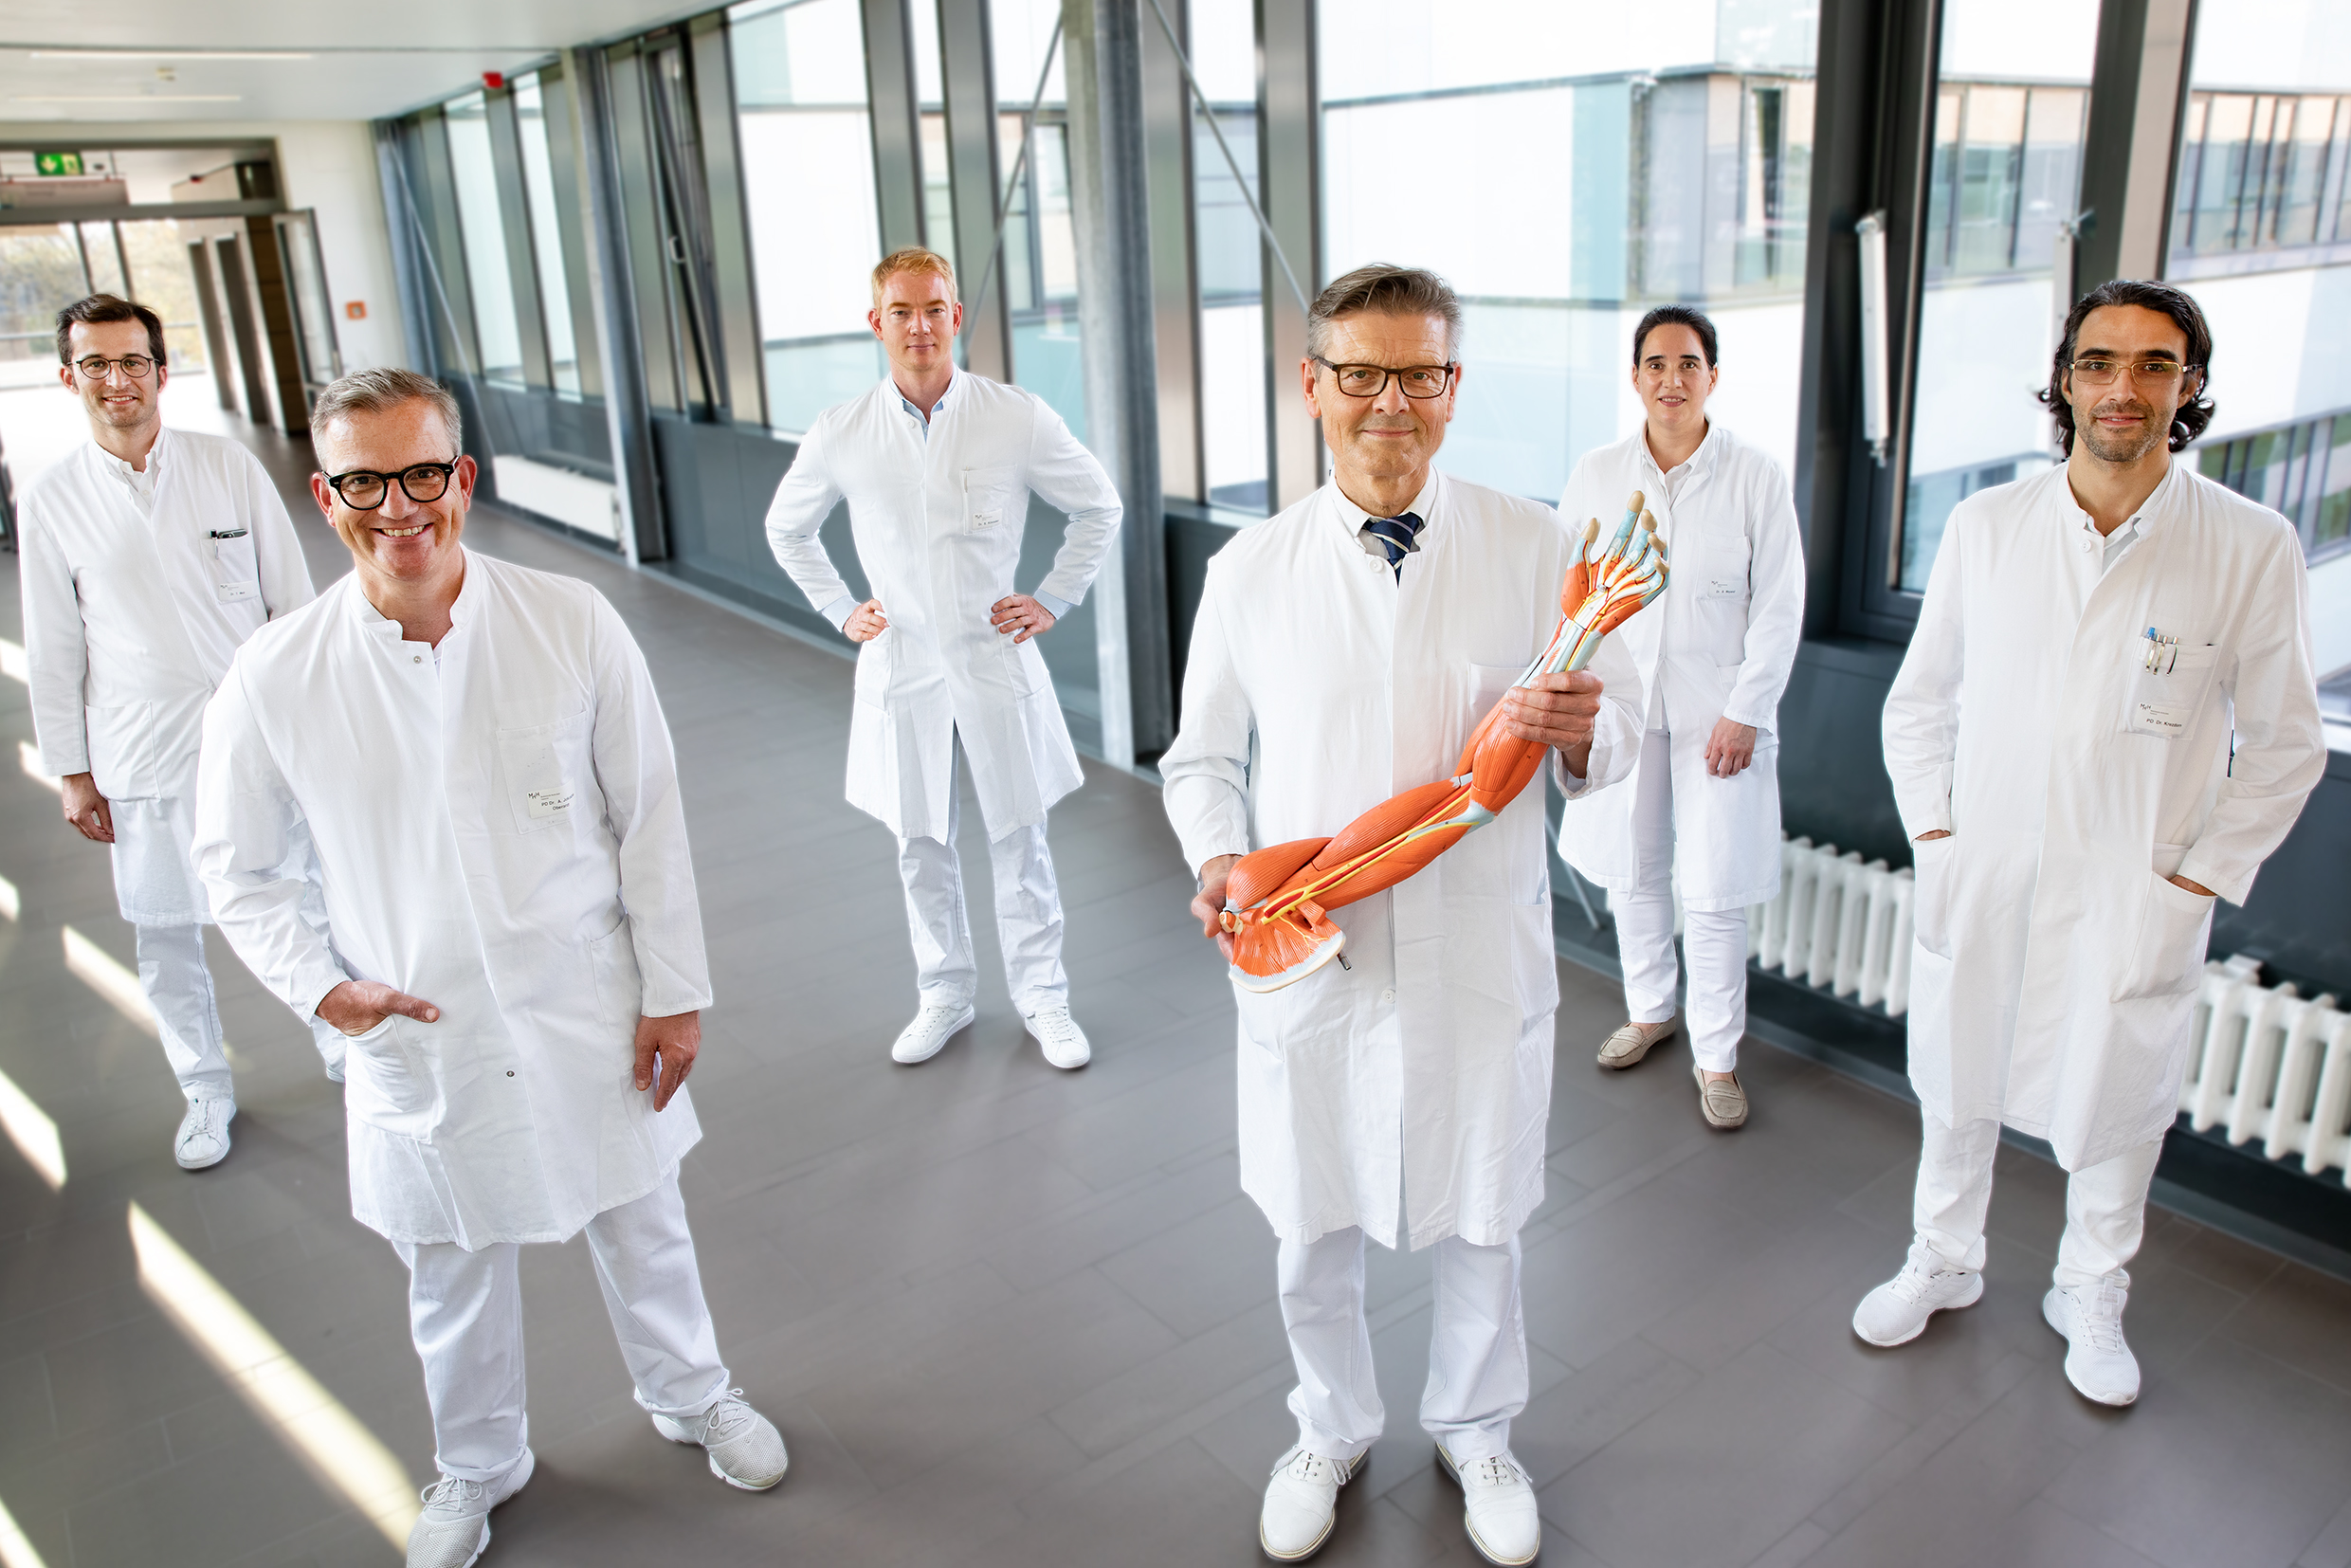 Gruppenbild der Oberärzte der Klinik mit Prof. Vogt, welcher ein Anschauungsmodell eines Armes mit Hand hoch hält.